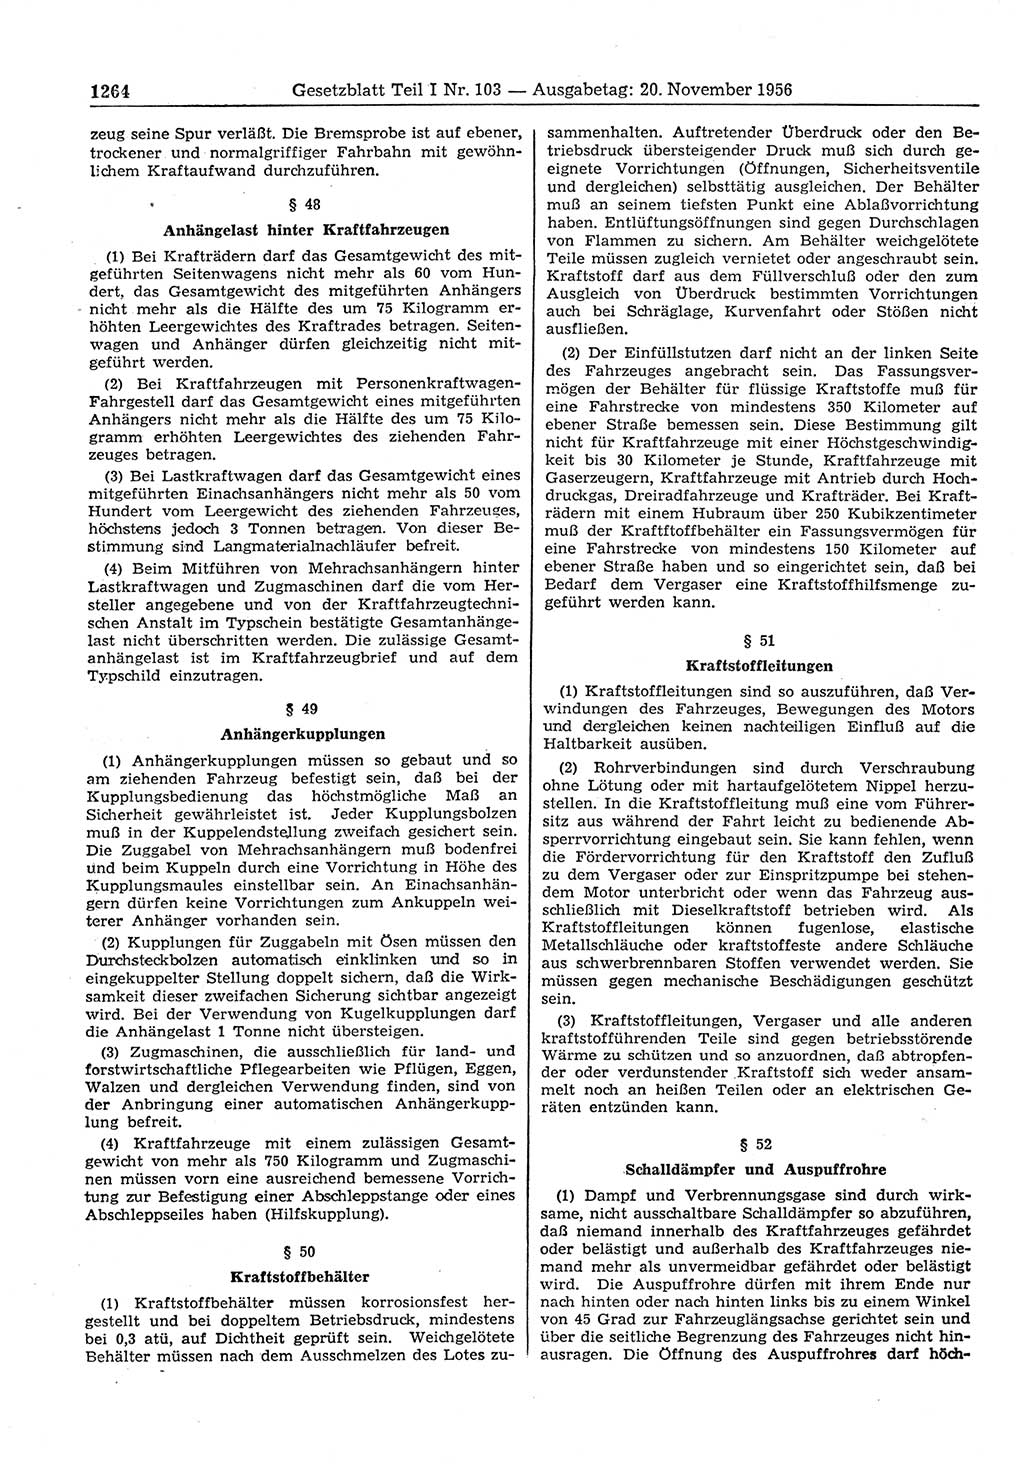 Gesetzblatt (GBl.) der Deutschen Demokratischen Republik (DDR) Teil Ⅰ 1956, Seite 1264 (GBl. DDR Ⅰ 1956, S. 1264)